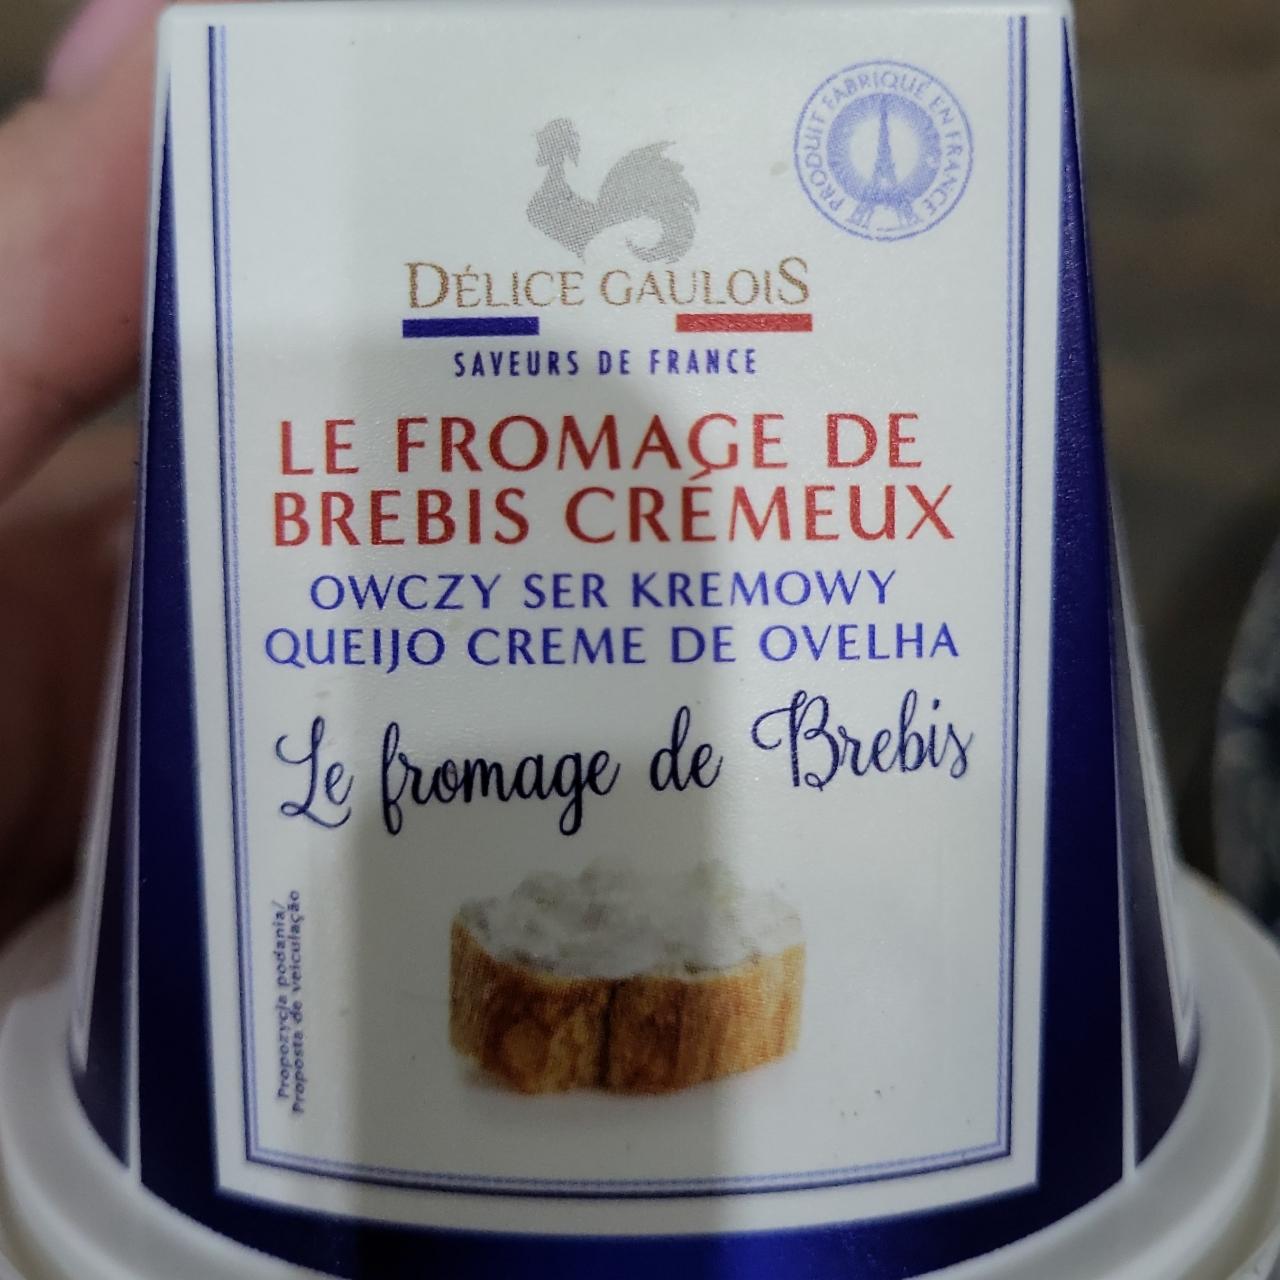 Fotografie - Le fromage de brebis cremeux owczy ser kremowy Délice Gaulois